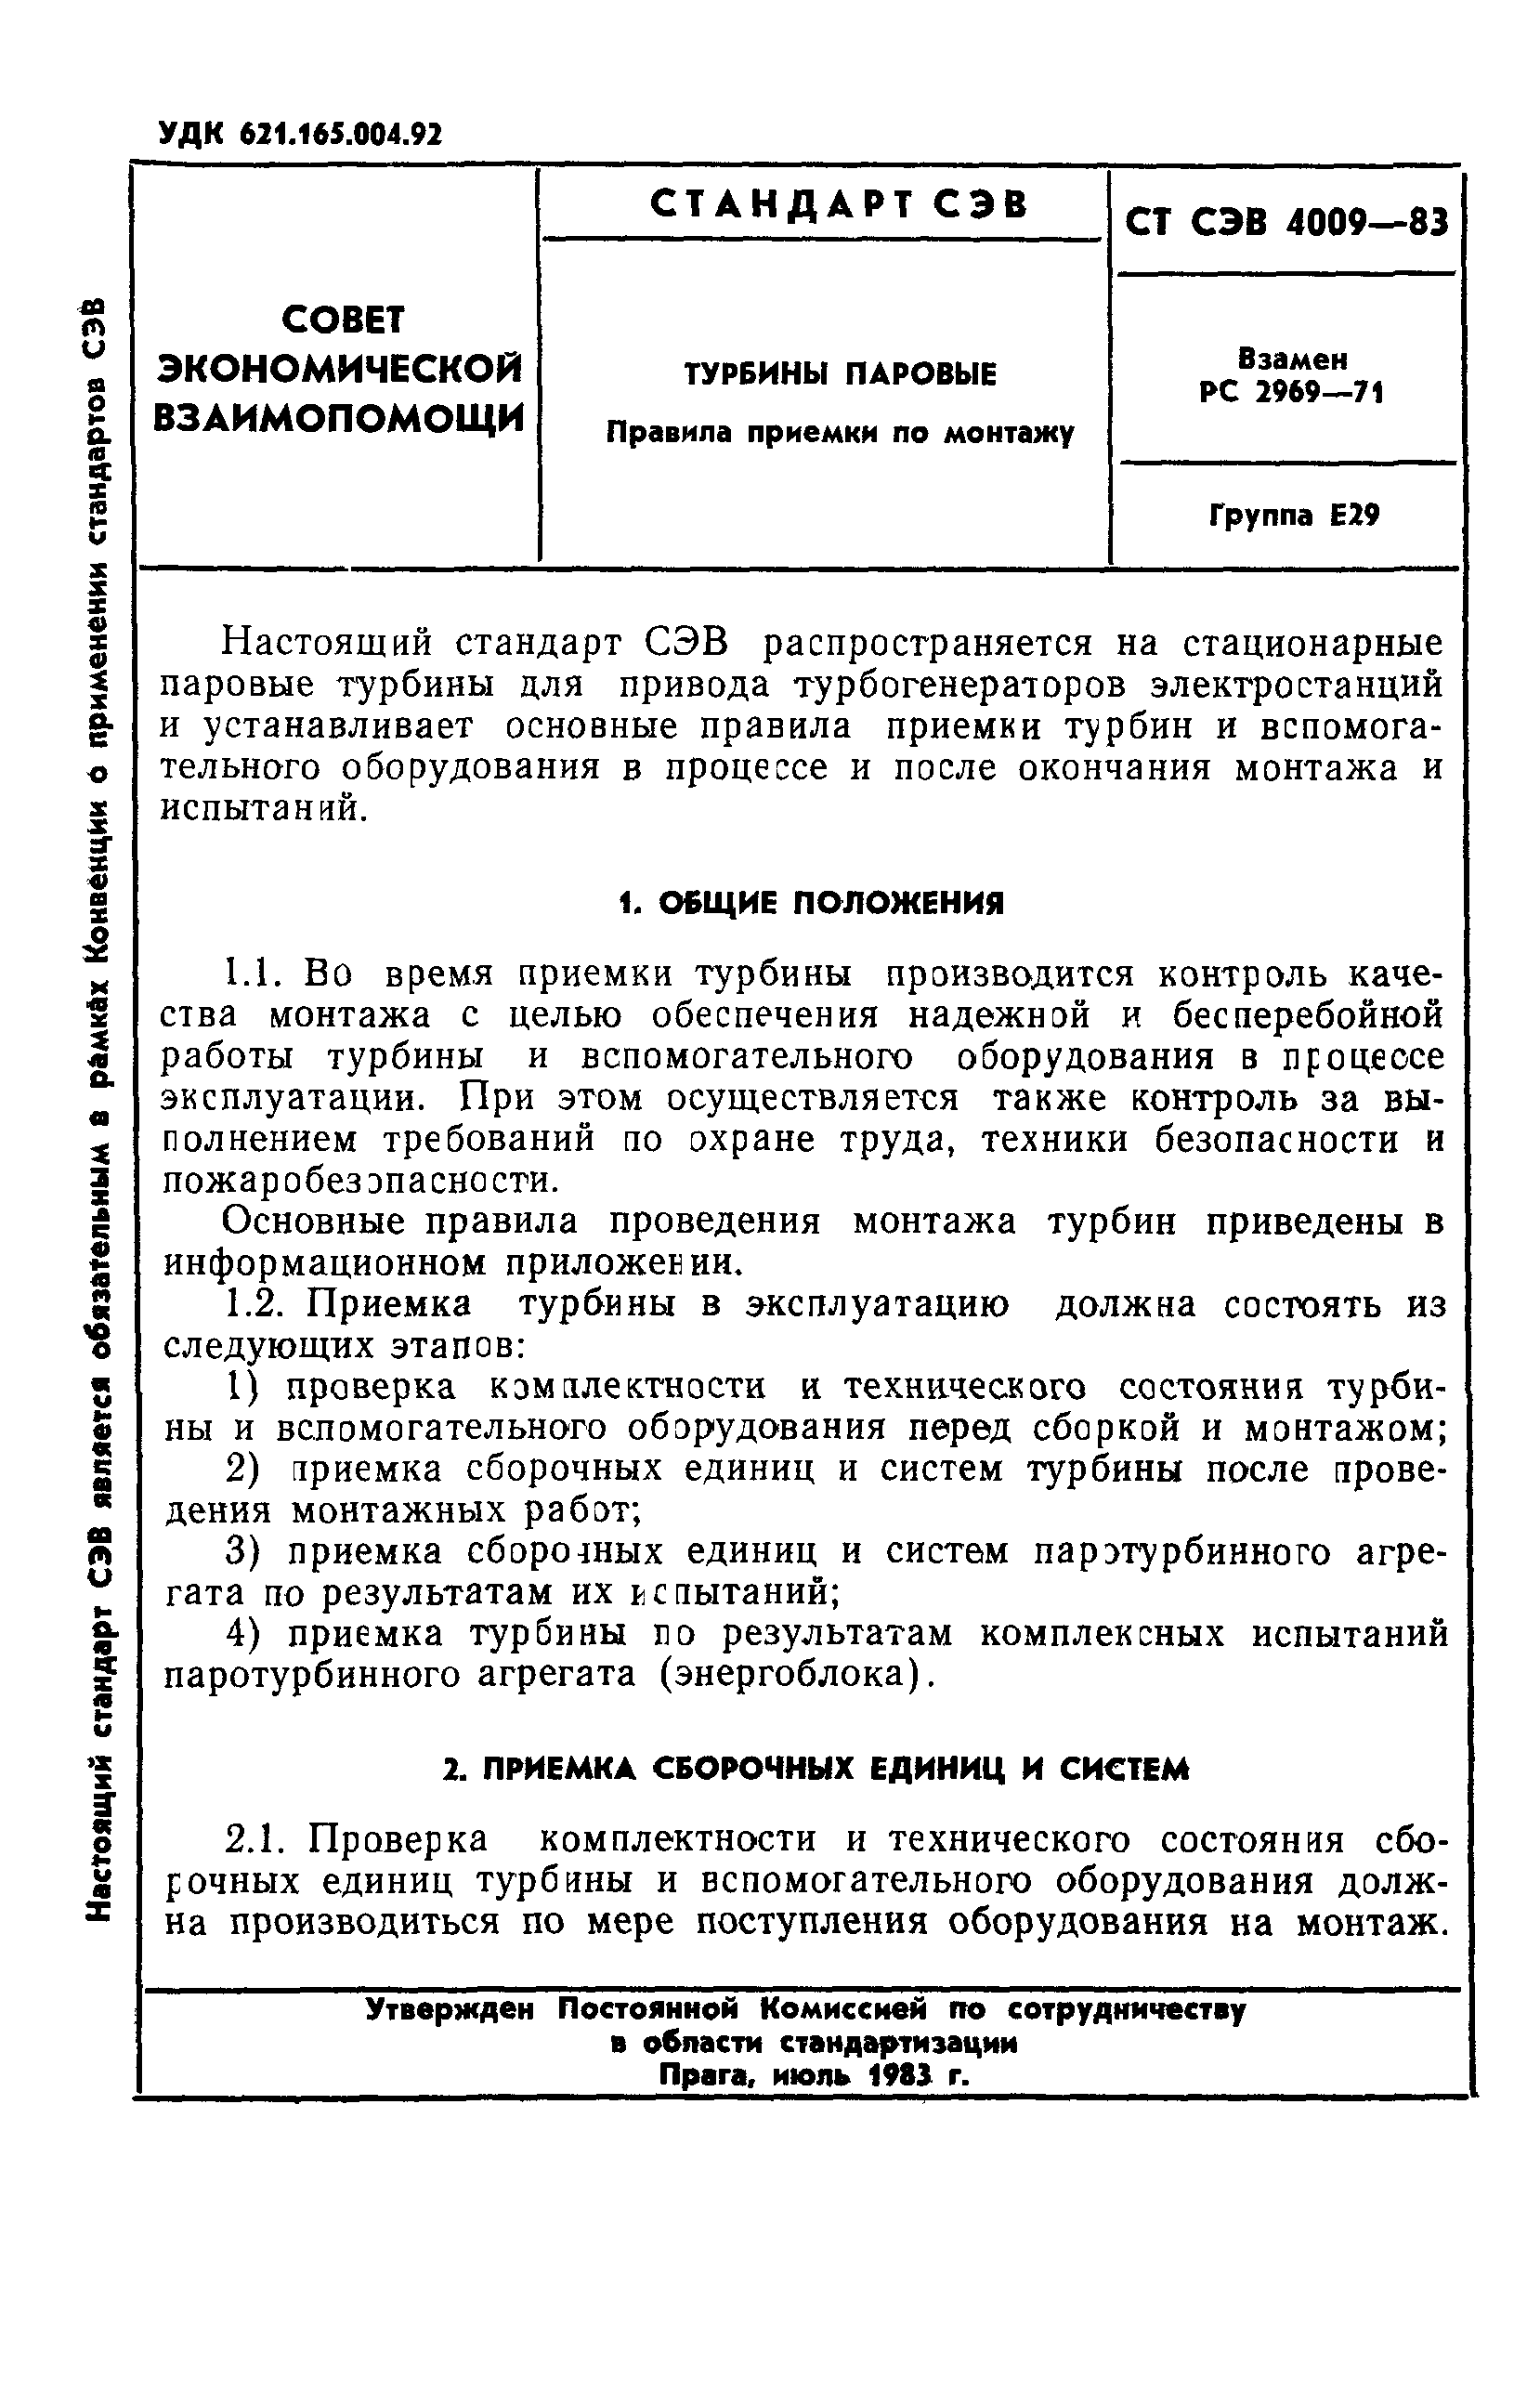 СТ СЭВ 4009-83